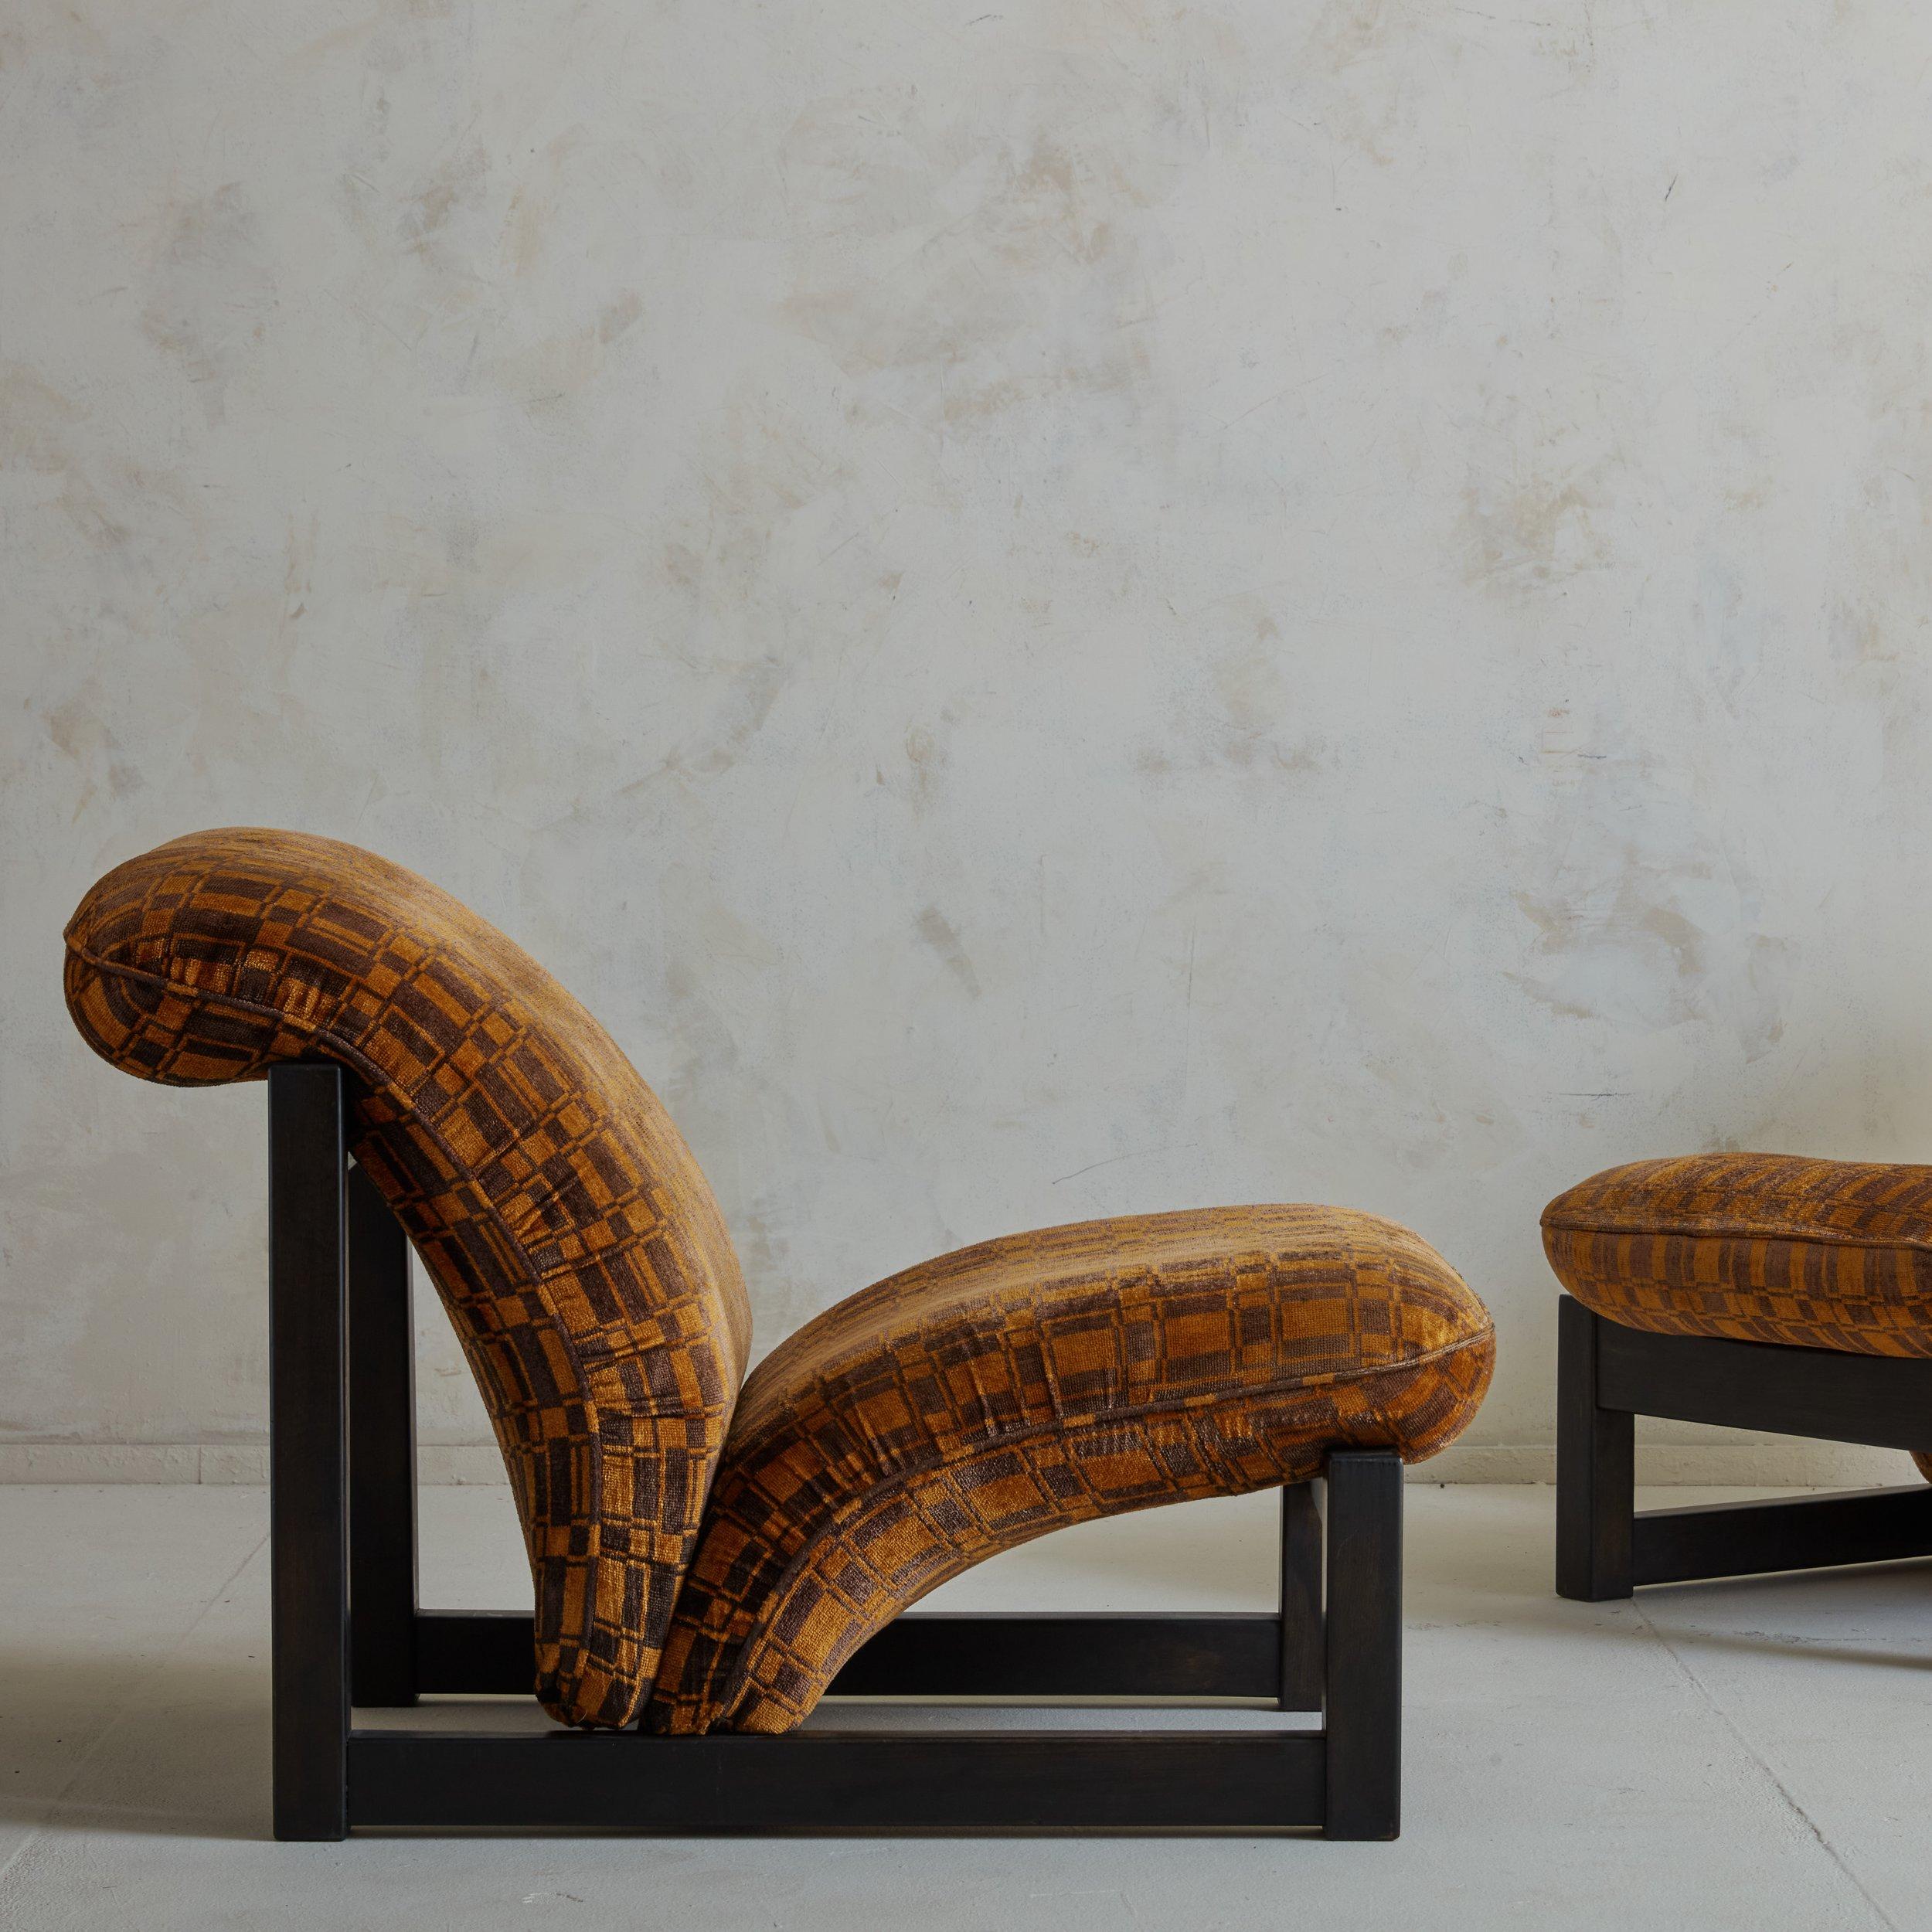 Une paire frappante de chaises de salon italiennes des années 1970 avec des cadres angulaires en bois teintés d'une riche teinte brun chocolat. Ces chaises sont dotées d'une assise et d'un dossier très galbés, qui ont conservé leur revêtement en